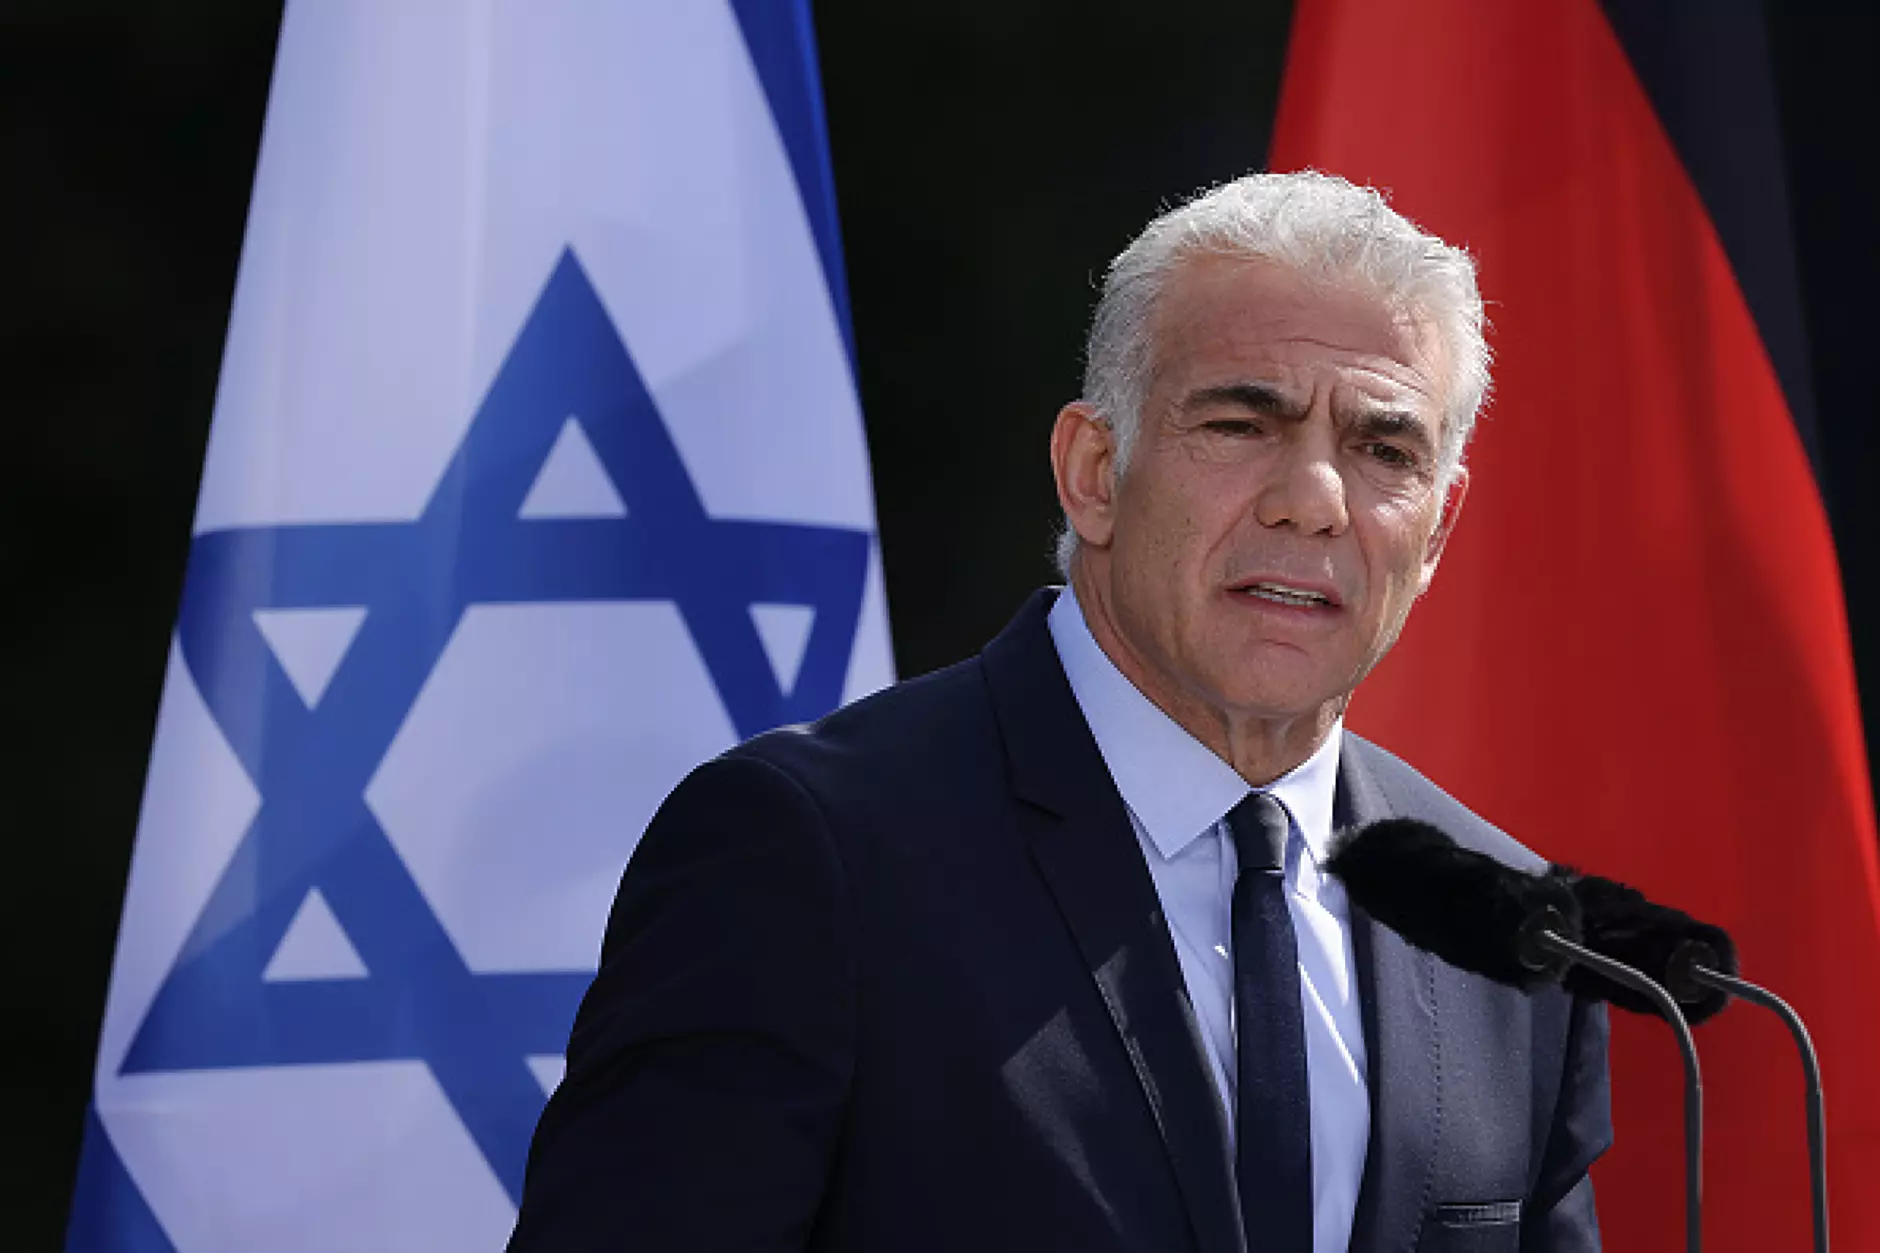 Израел и Ливан с историческо споразумение по спора за морската граница